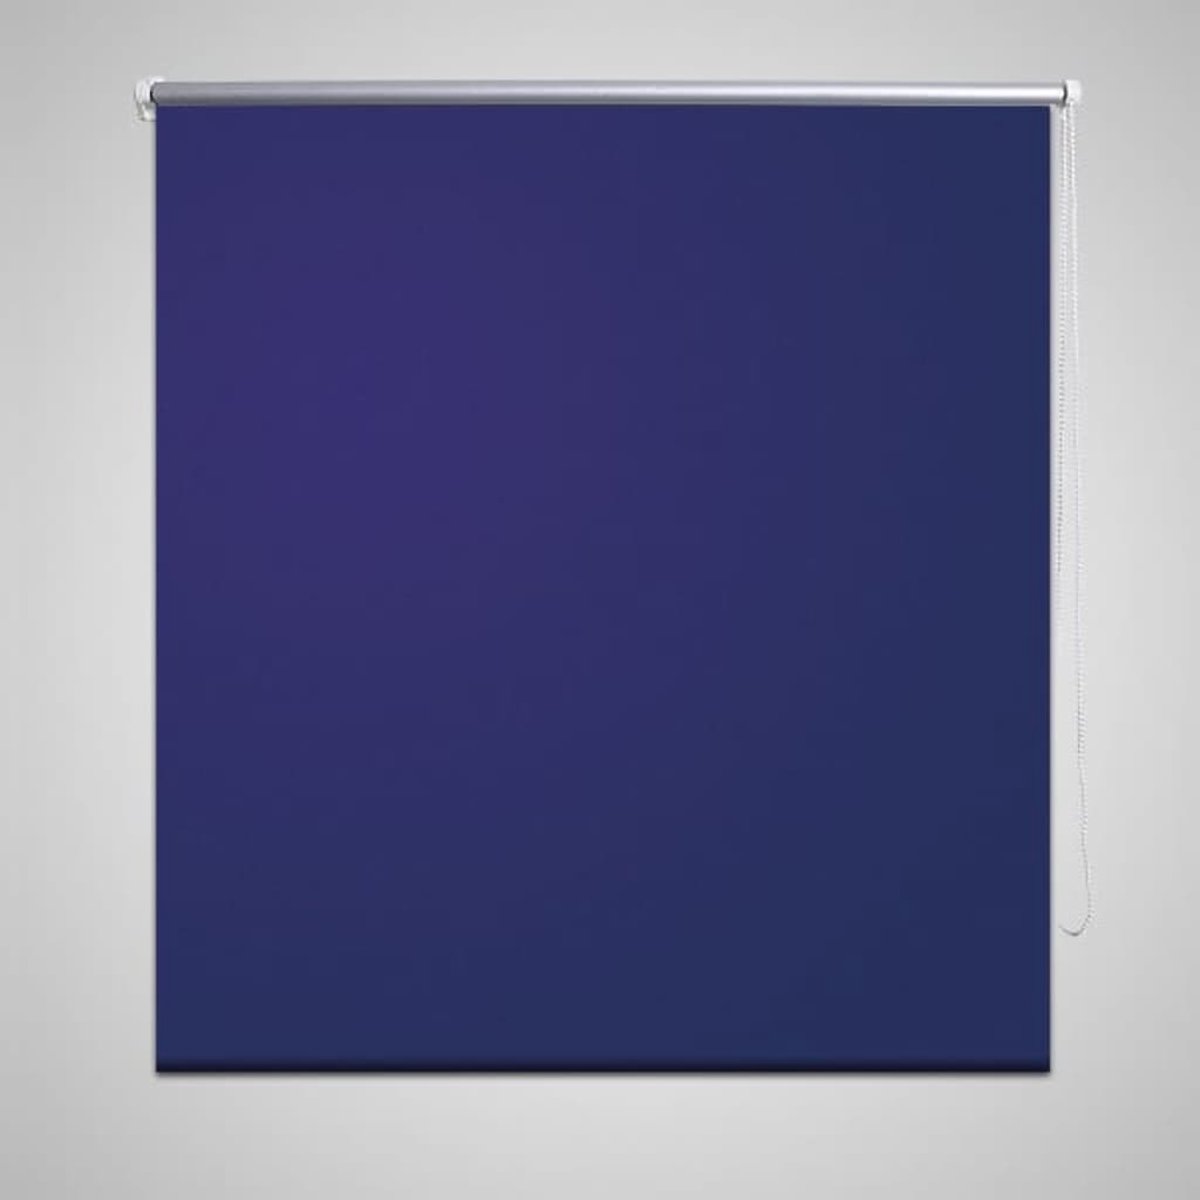 Rolgordijn verduisterend 40 x 100 cm marine / blauw